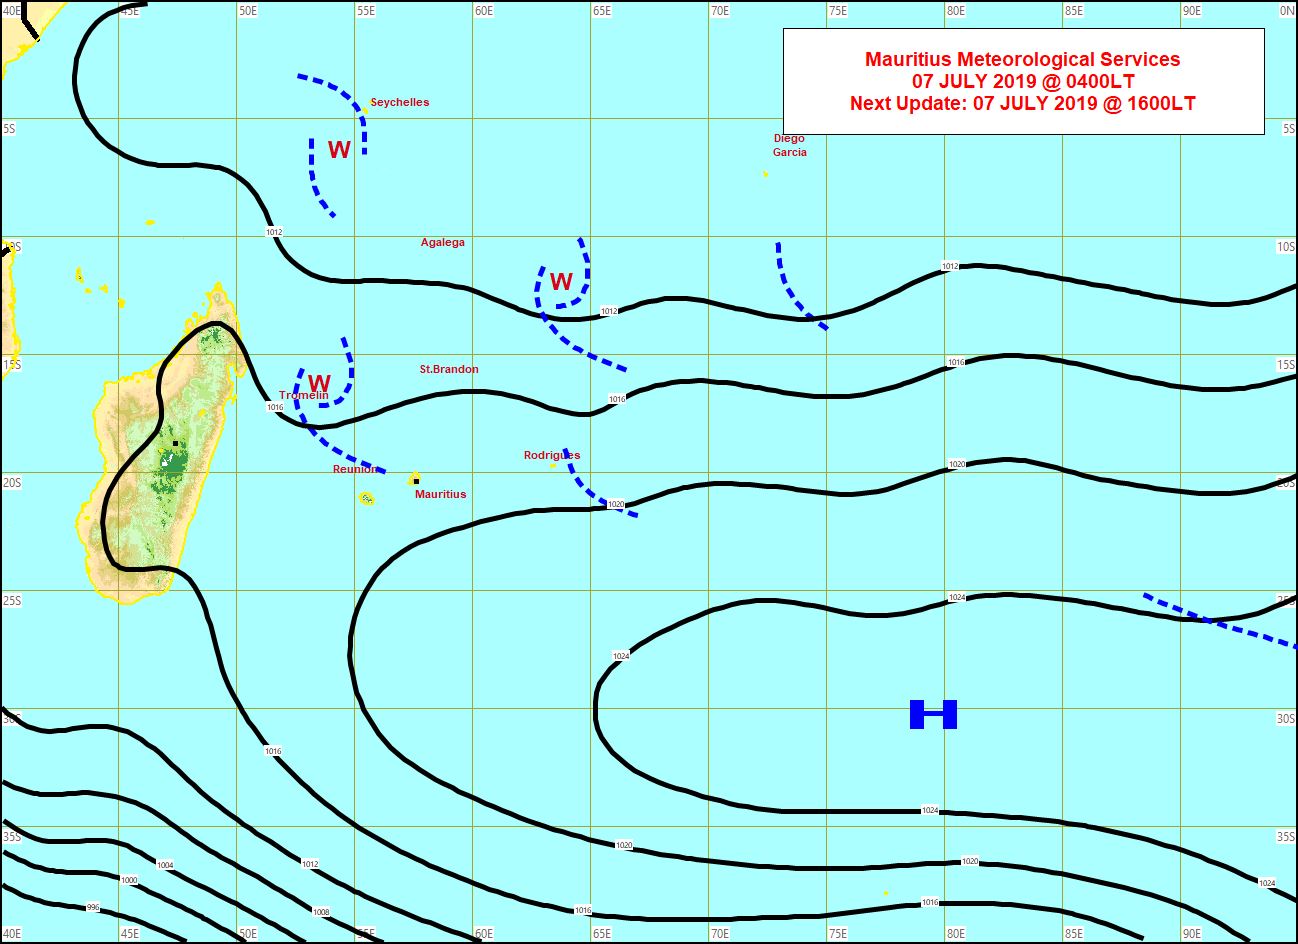 Analyse de la situation de surface ce matin. La ligne d'instabilité juste au Nord de la Réunion est peu active. Les vents sotn faibles à modérés sur la zone. MMS